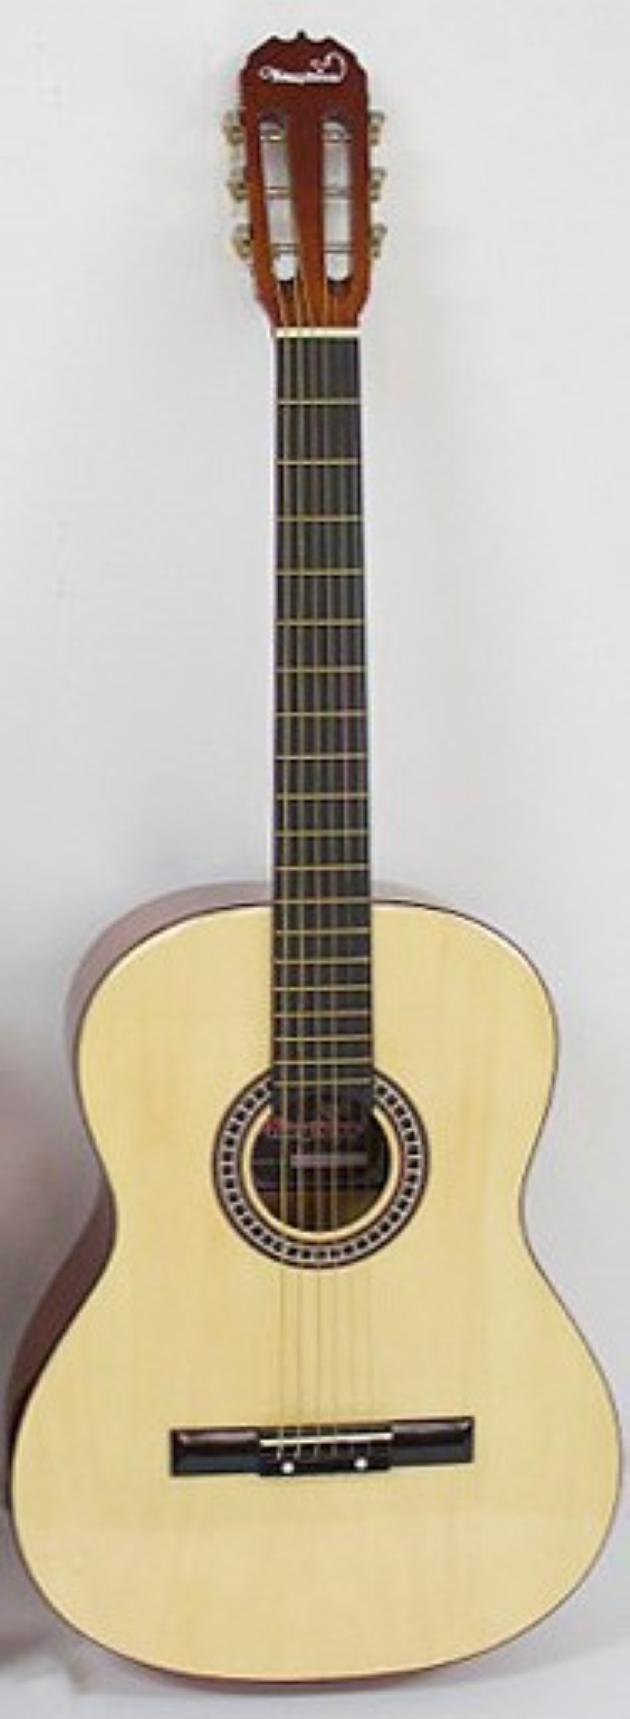 AG3990-39吋古典吉他(原木色) 定價2100